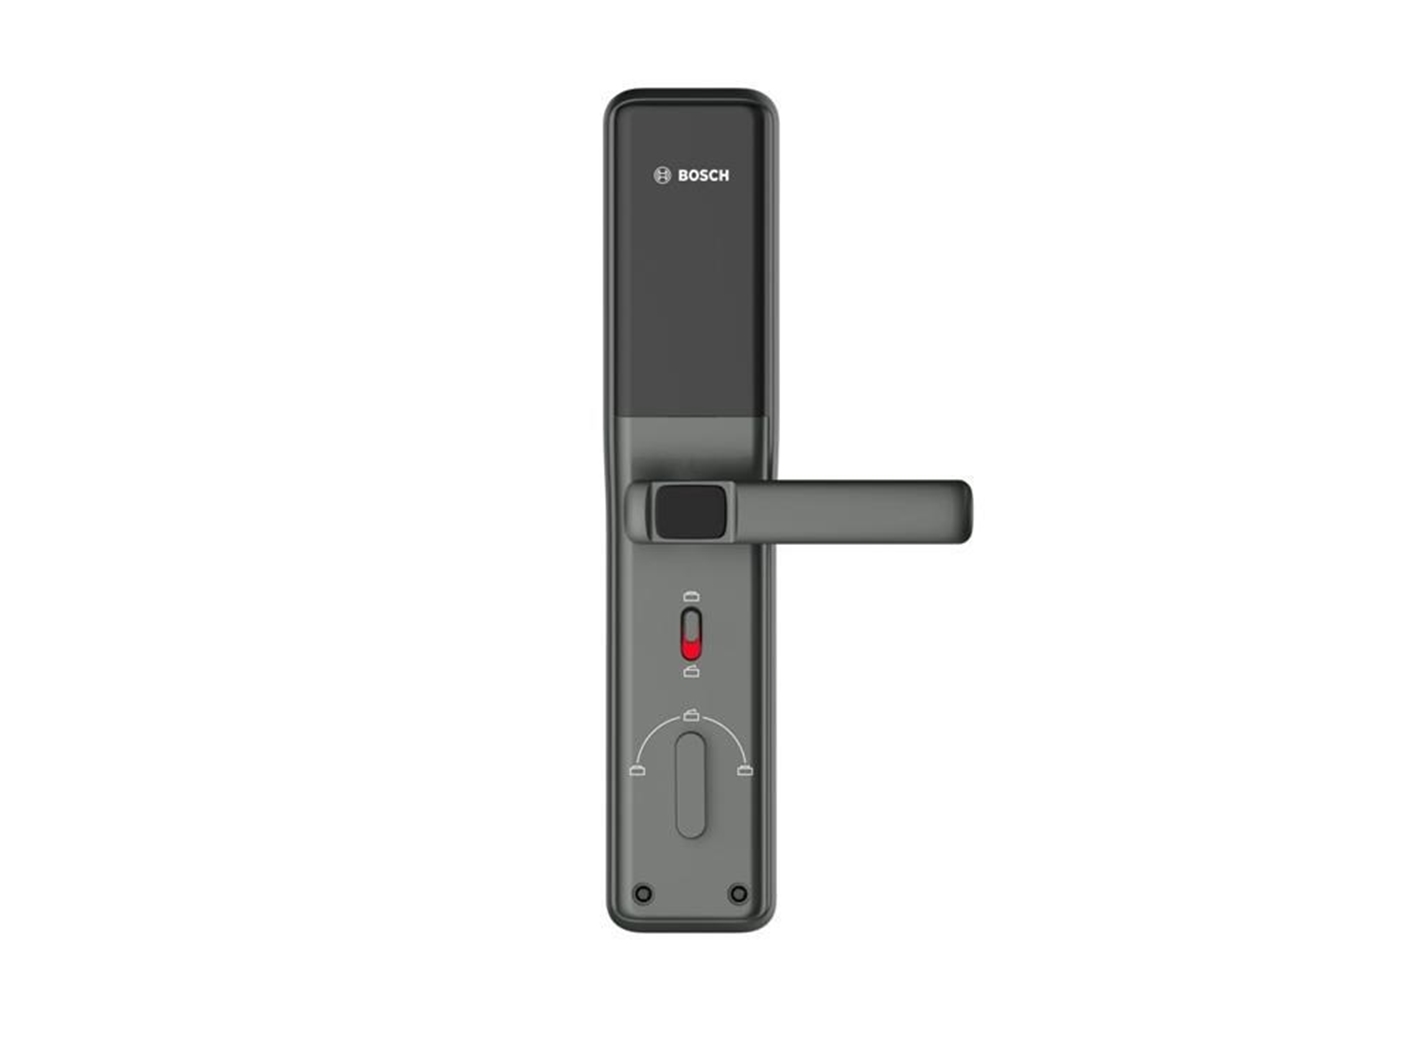 Khóa cửa điện tử Bosch ID-30BKB màu xám đen